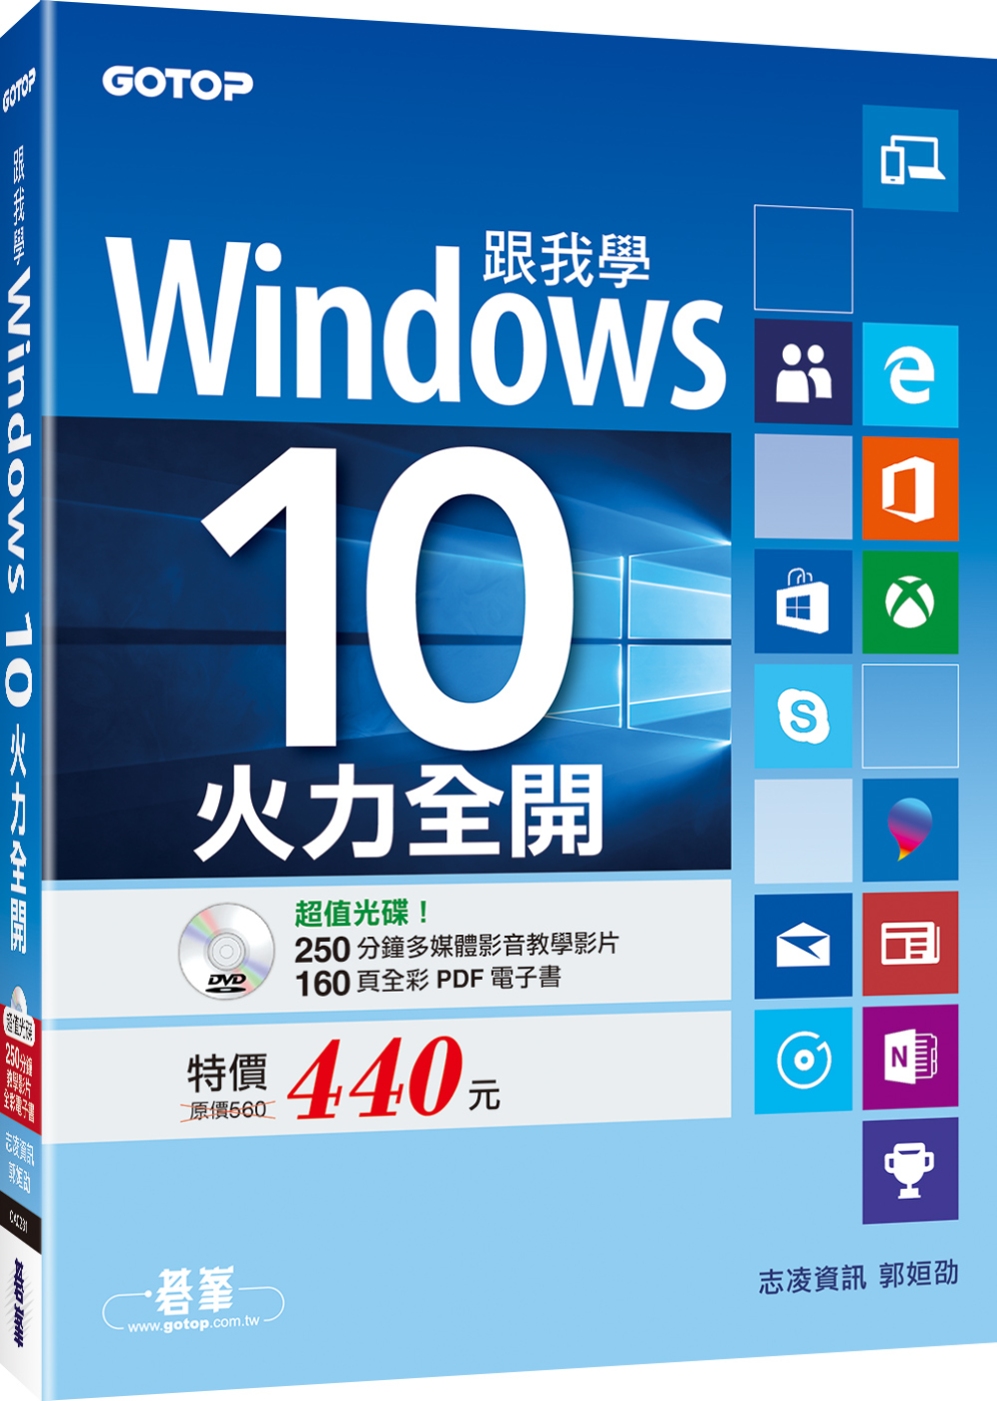 跟我學Windows 10：火力全開(附250分鐘影音教學影片/160頁全彩電子書)